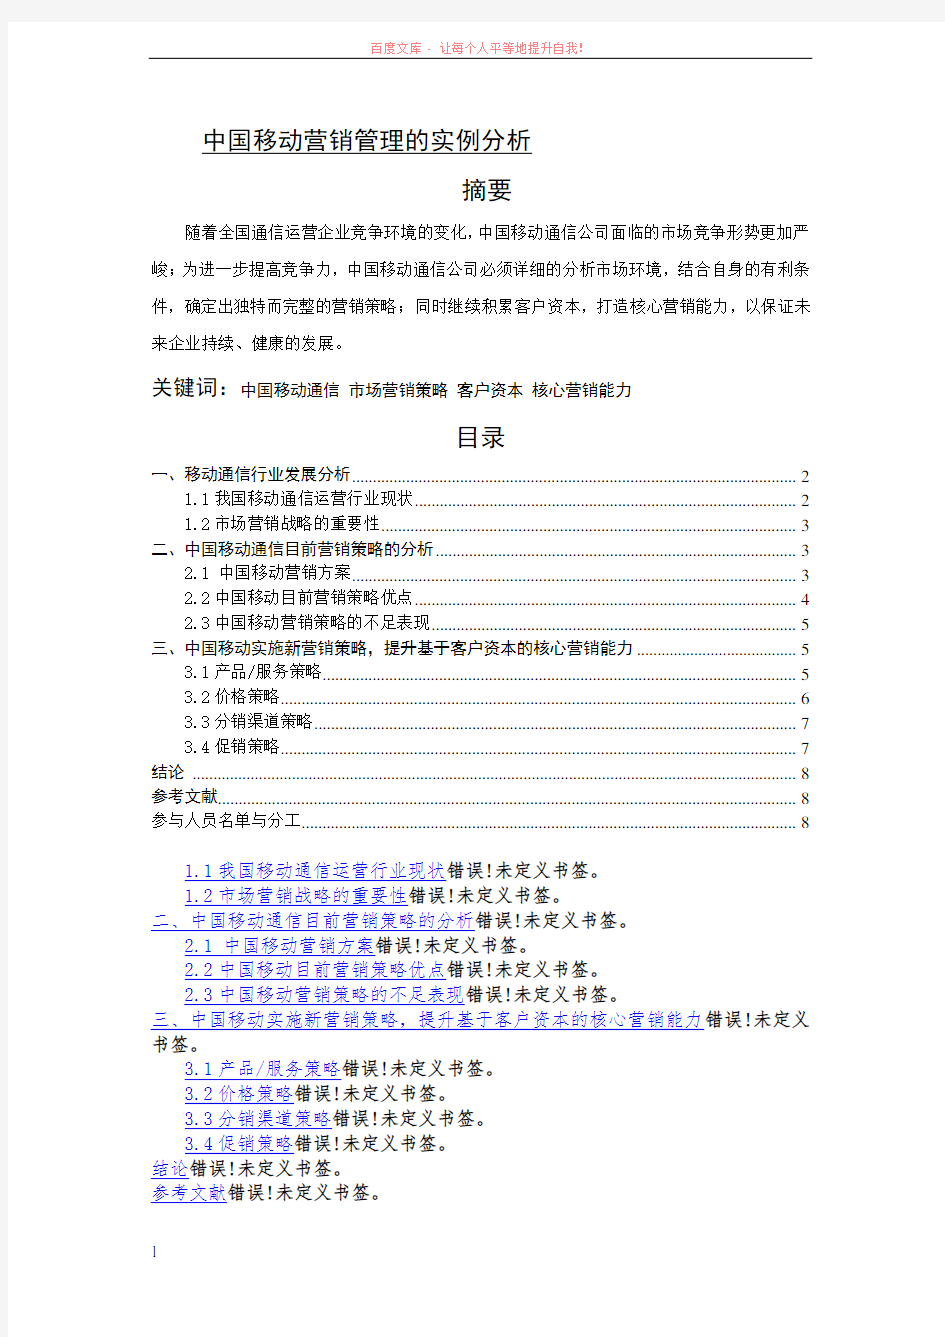 中国移动营销管理的实例分析 (1)